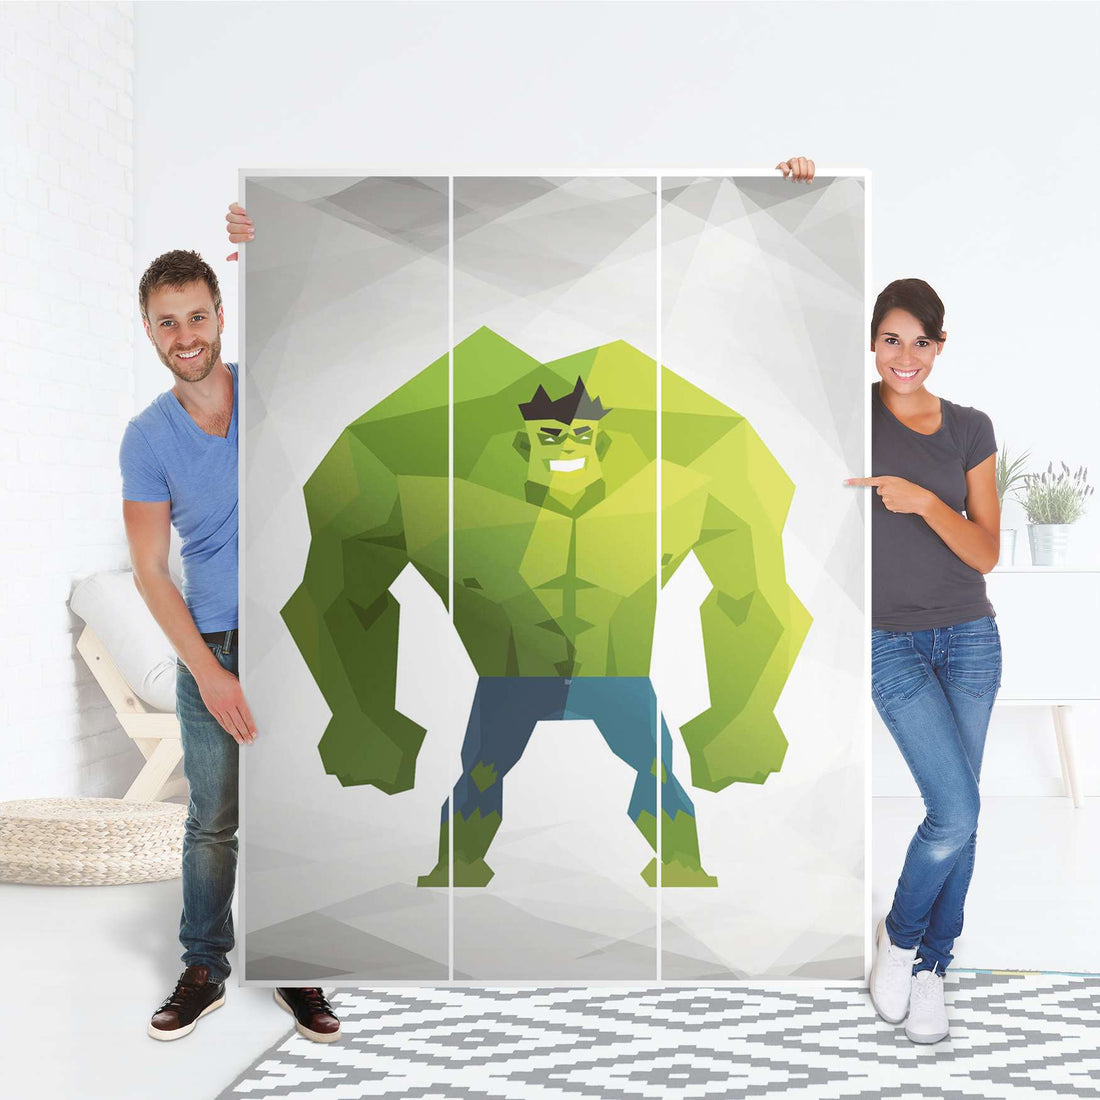 Folie für Möbel Mr. Green - IKEA Pax Schrank 201 cm Höhe - 3 Türen - Folie